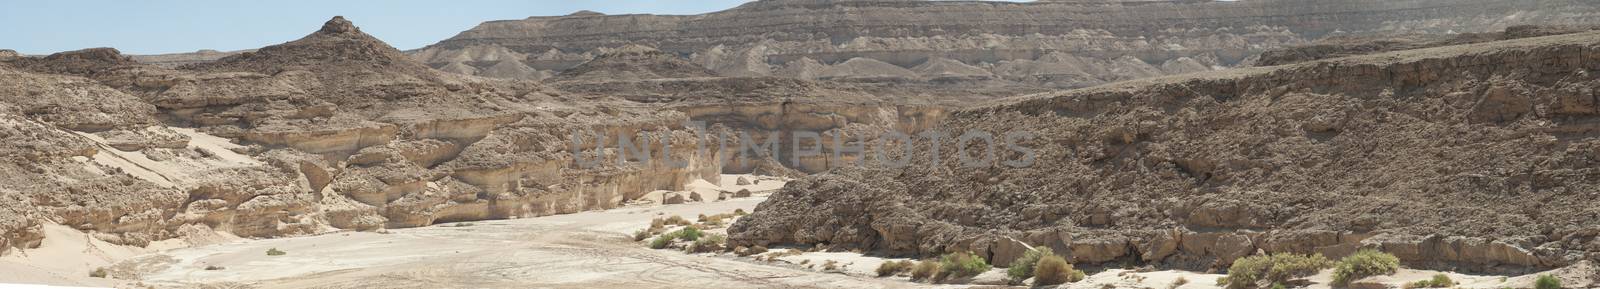 Rocky mountain slope landscape in an arid desert environment